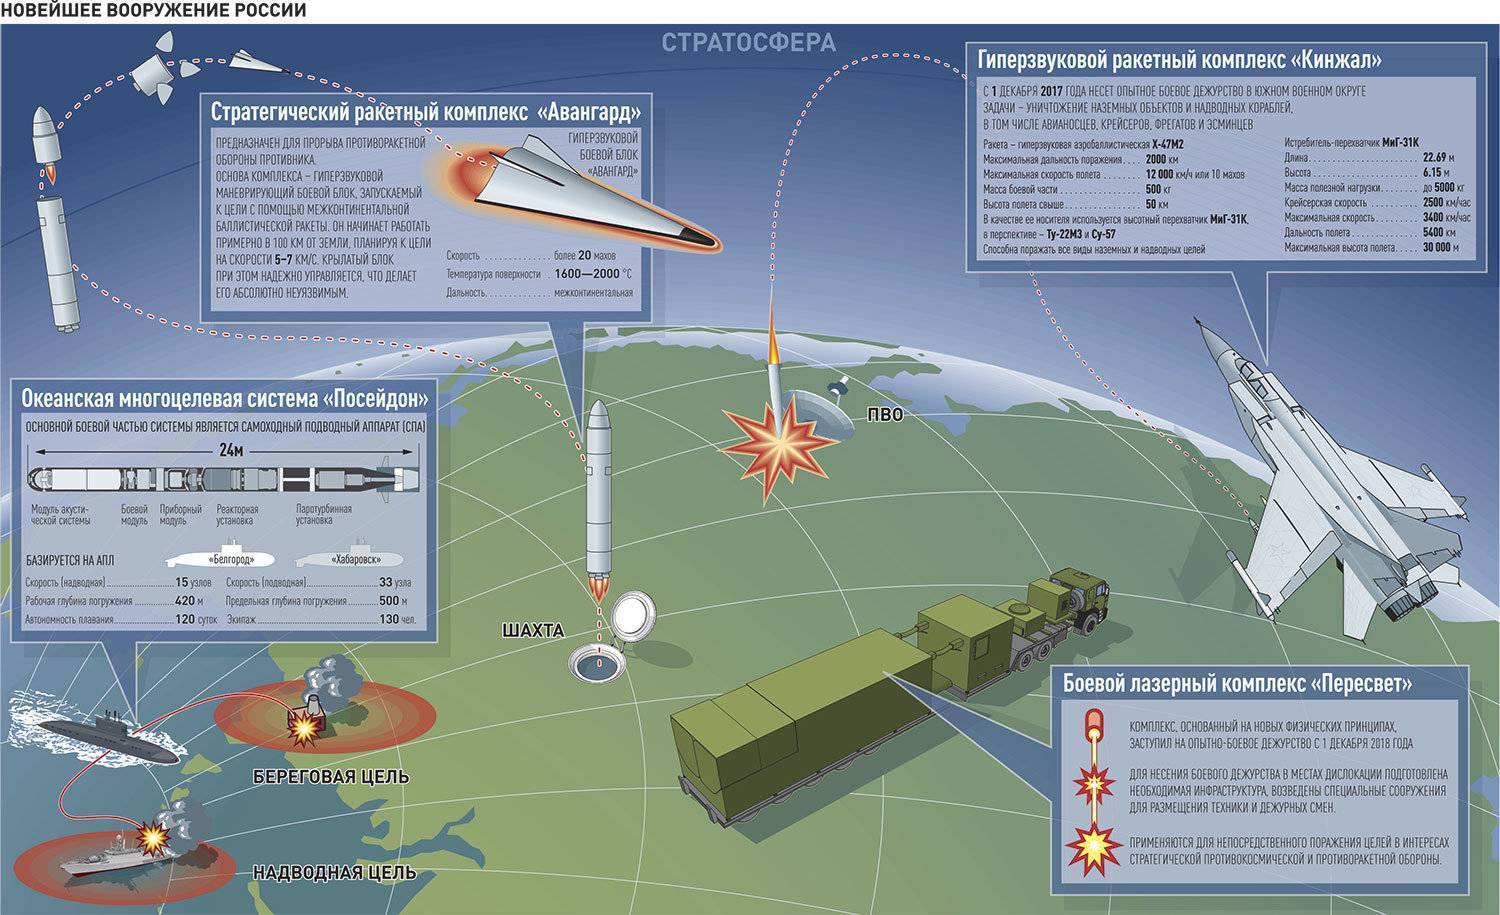 Кр буревестник - крылатая ракета с ядерным двигателем, известные факты и предположения, схема и принцип работы, проблемы, тактика применения,